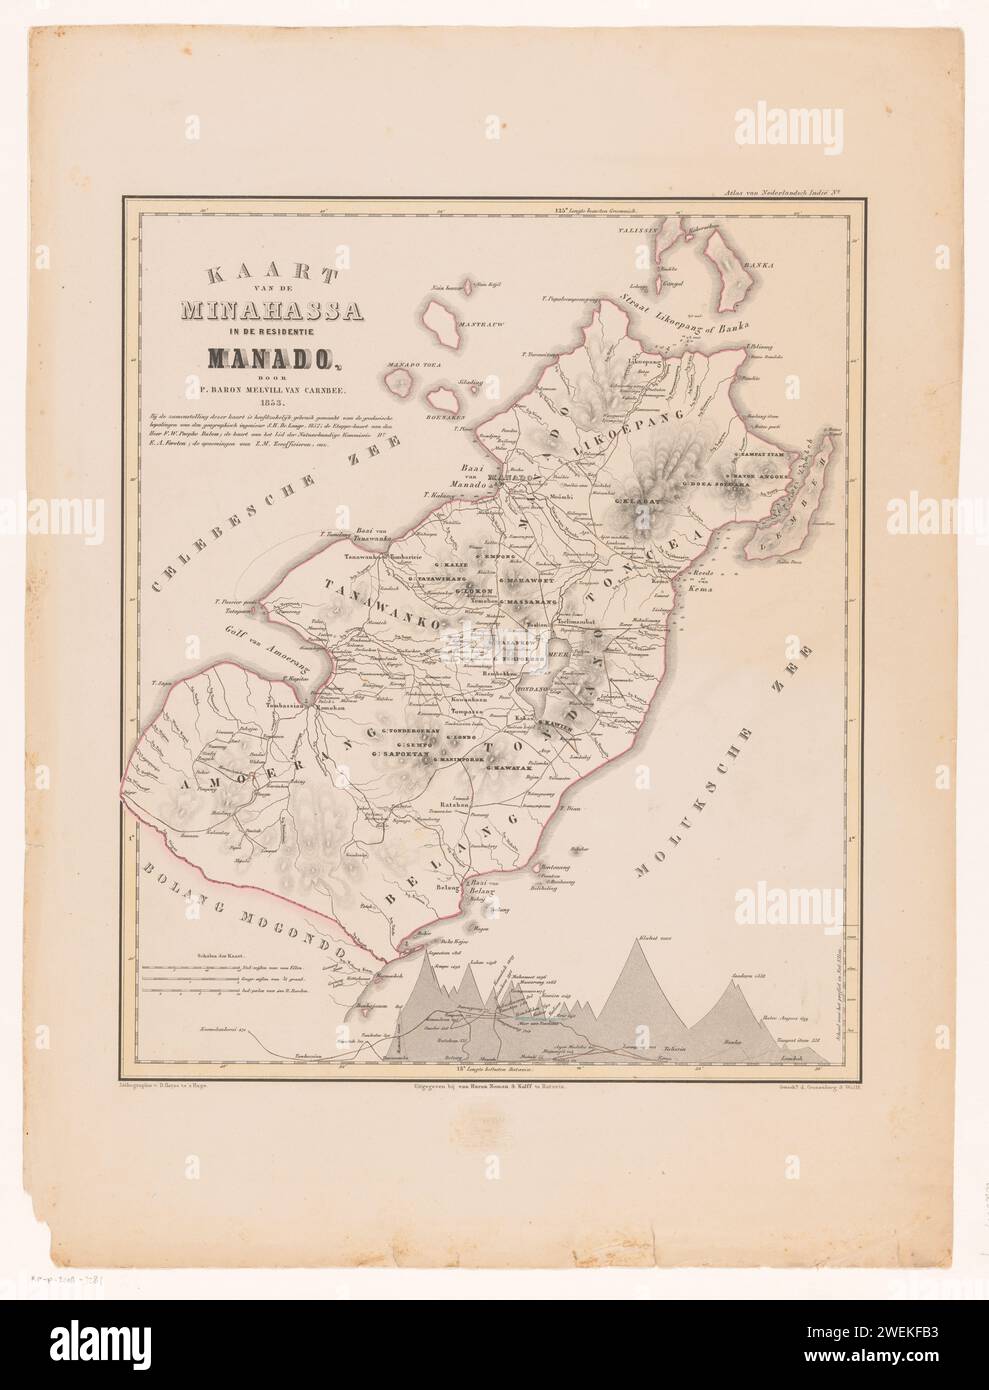 RP-P-2018-3282, Desiré Heyse, Pieter Baron Melvill van Carnbee, 1853 drucken MINASSA-Karte mit einer Grad-Verteilung um und einer Höhenkarte unten rechts. Papierkarten, Atlanten Manado Stockfoto